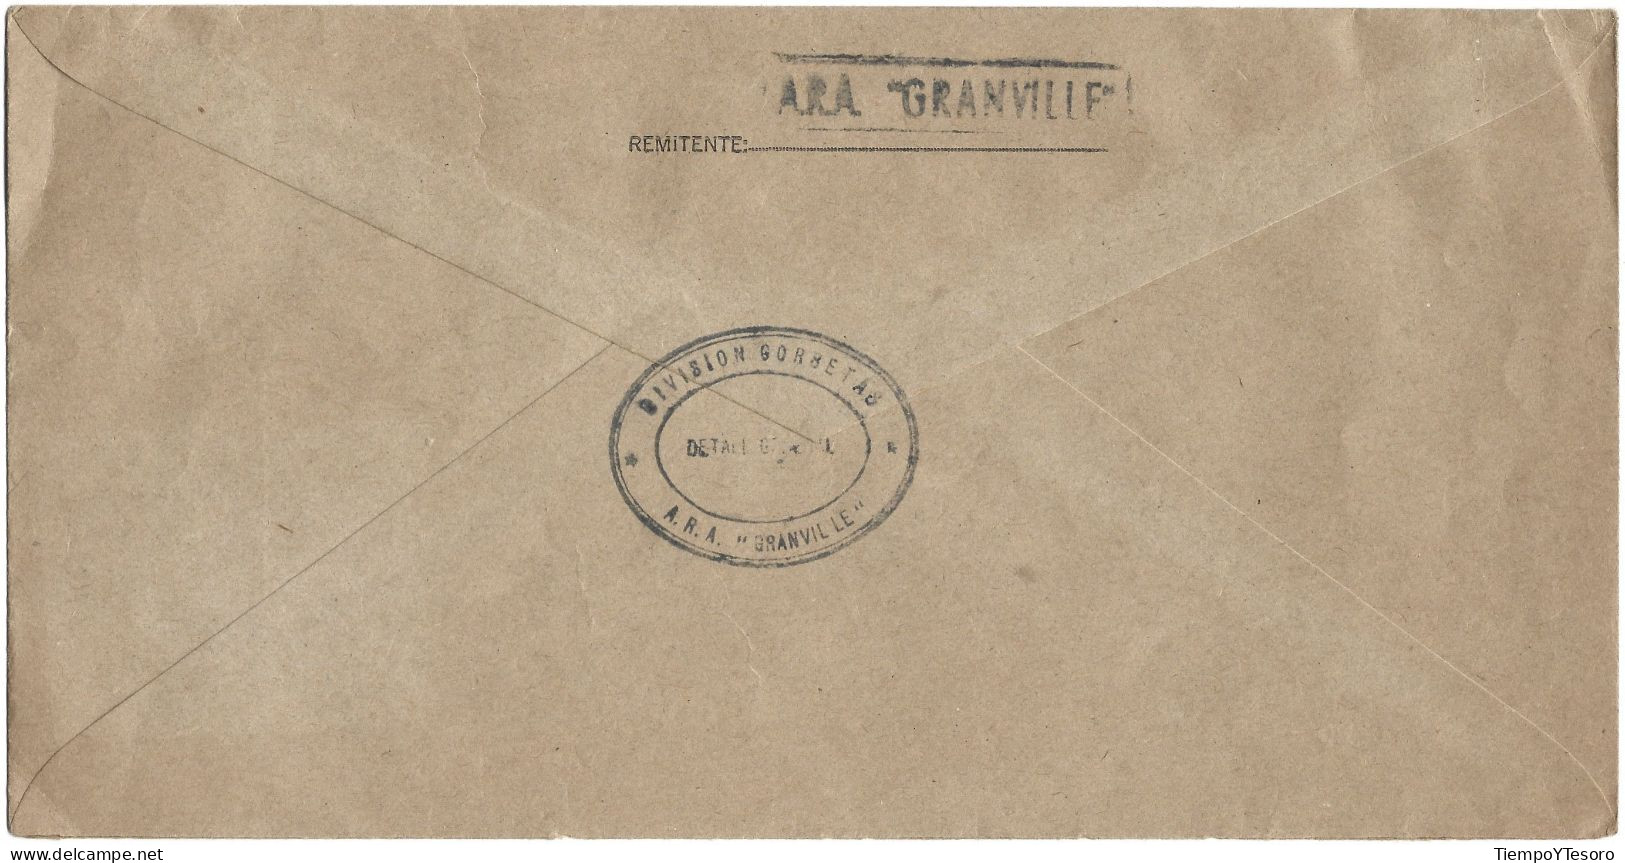 Correspondence - Argentina, Armada Argentina, ARA Granville,1997, N°220 - Usados